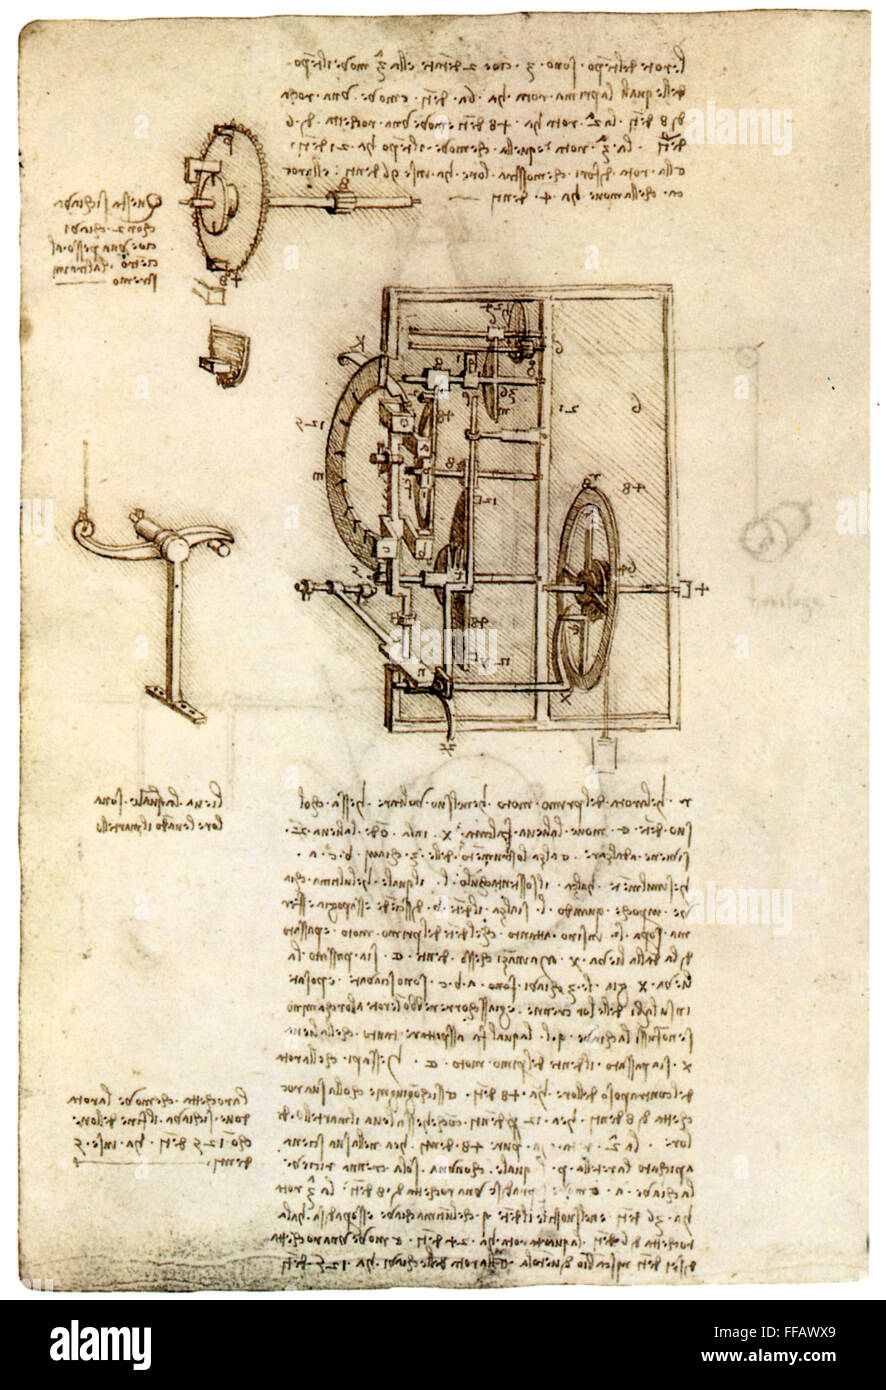 LEONARDO: UHRWERK. /nLeonardo da Vinci Zeichnung von einem Uhrwerk.  Manuskriptseite, c1495-97 Stockfotografie - Alamy